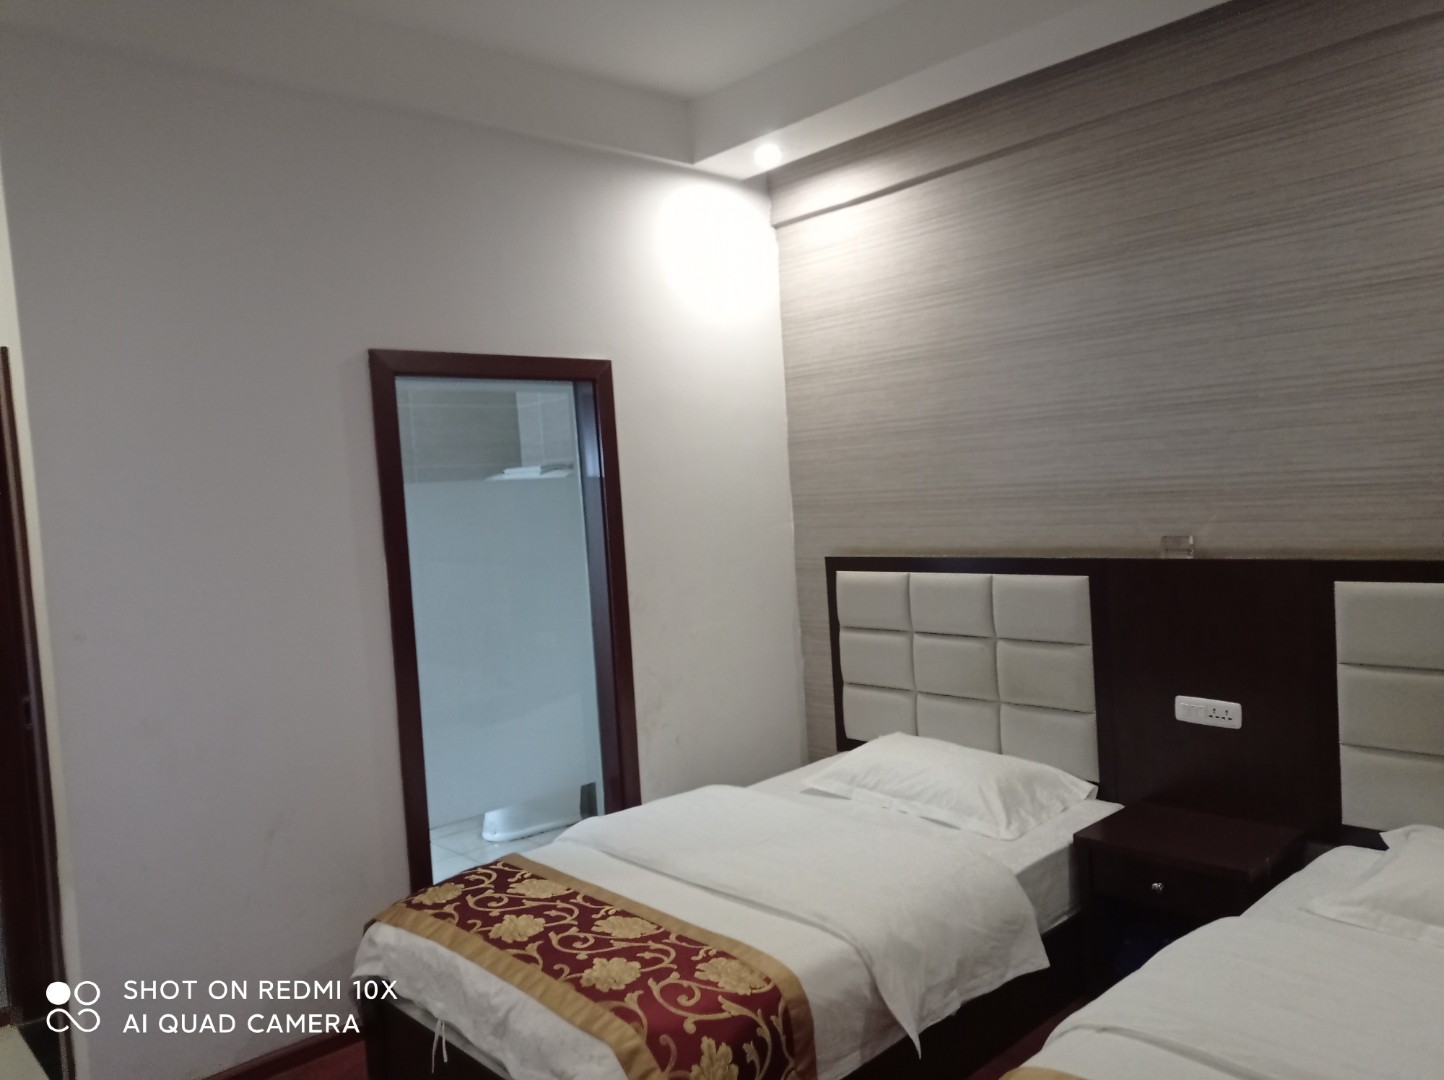 云南大理宾川酒店全方面检测房屋第三方责任机构